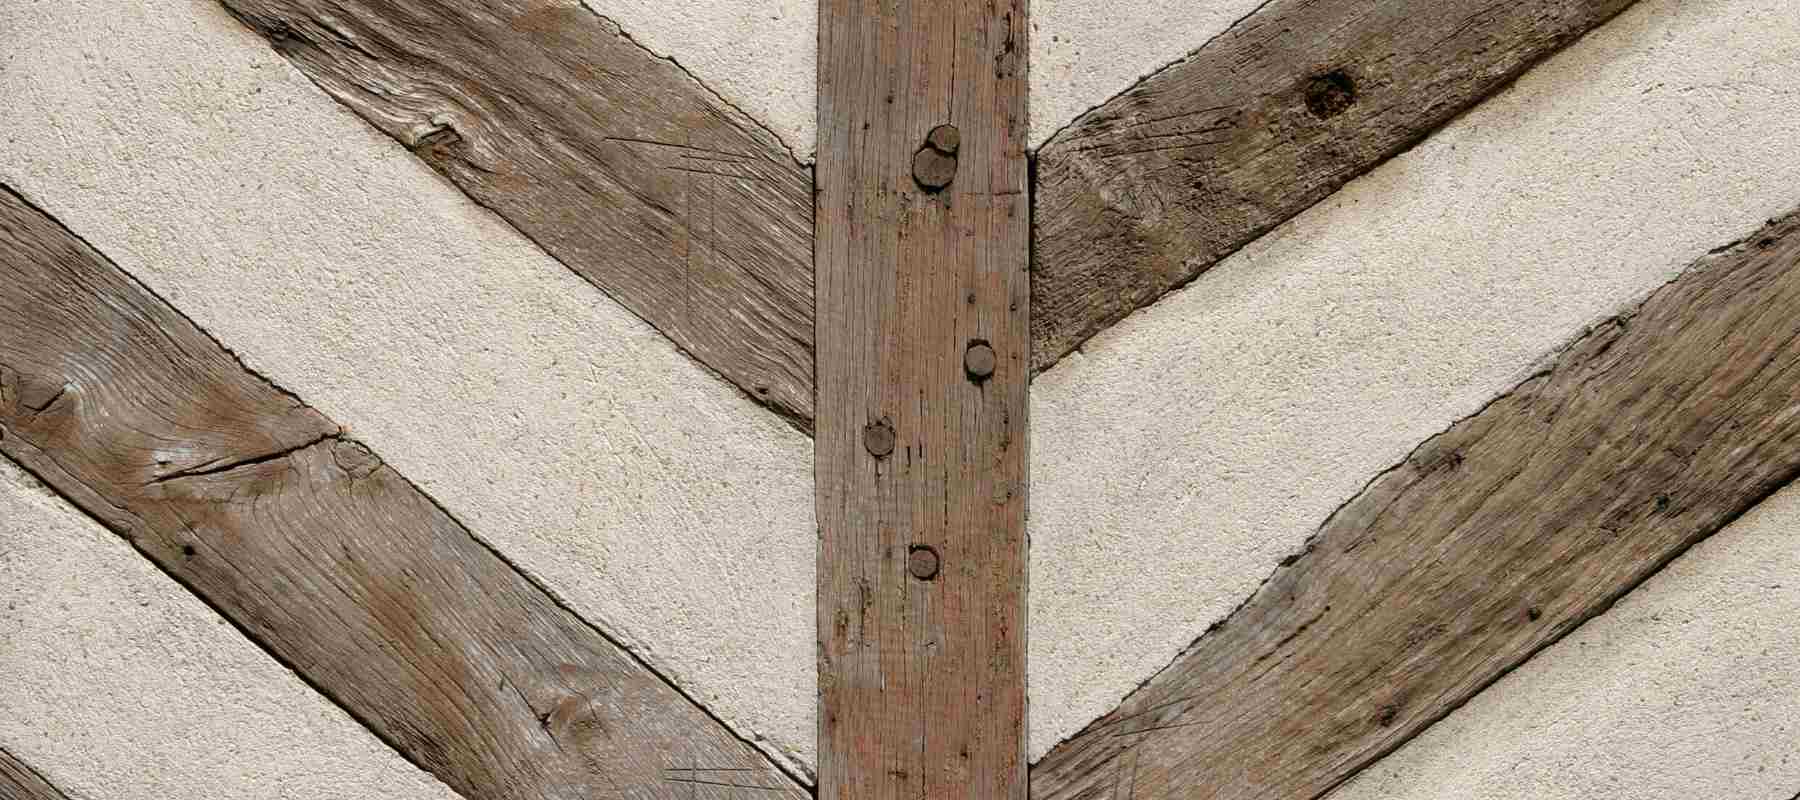 Close up of wooden beams